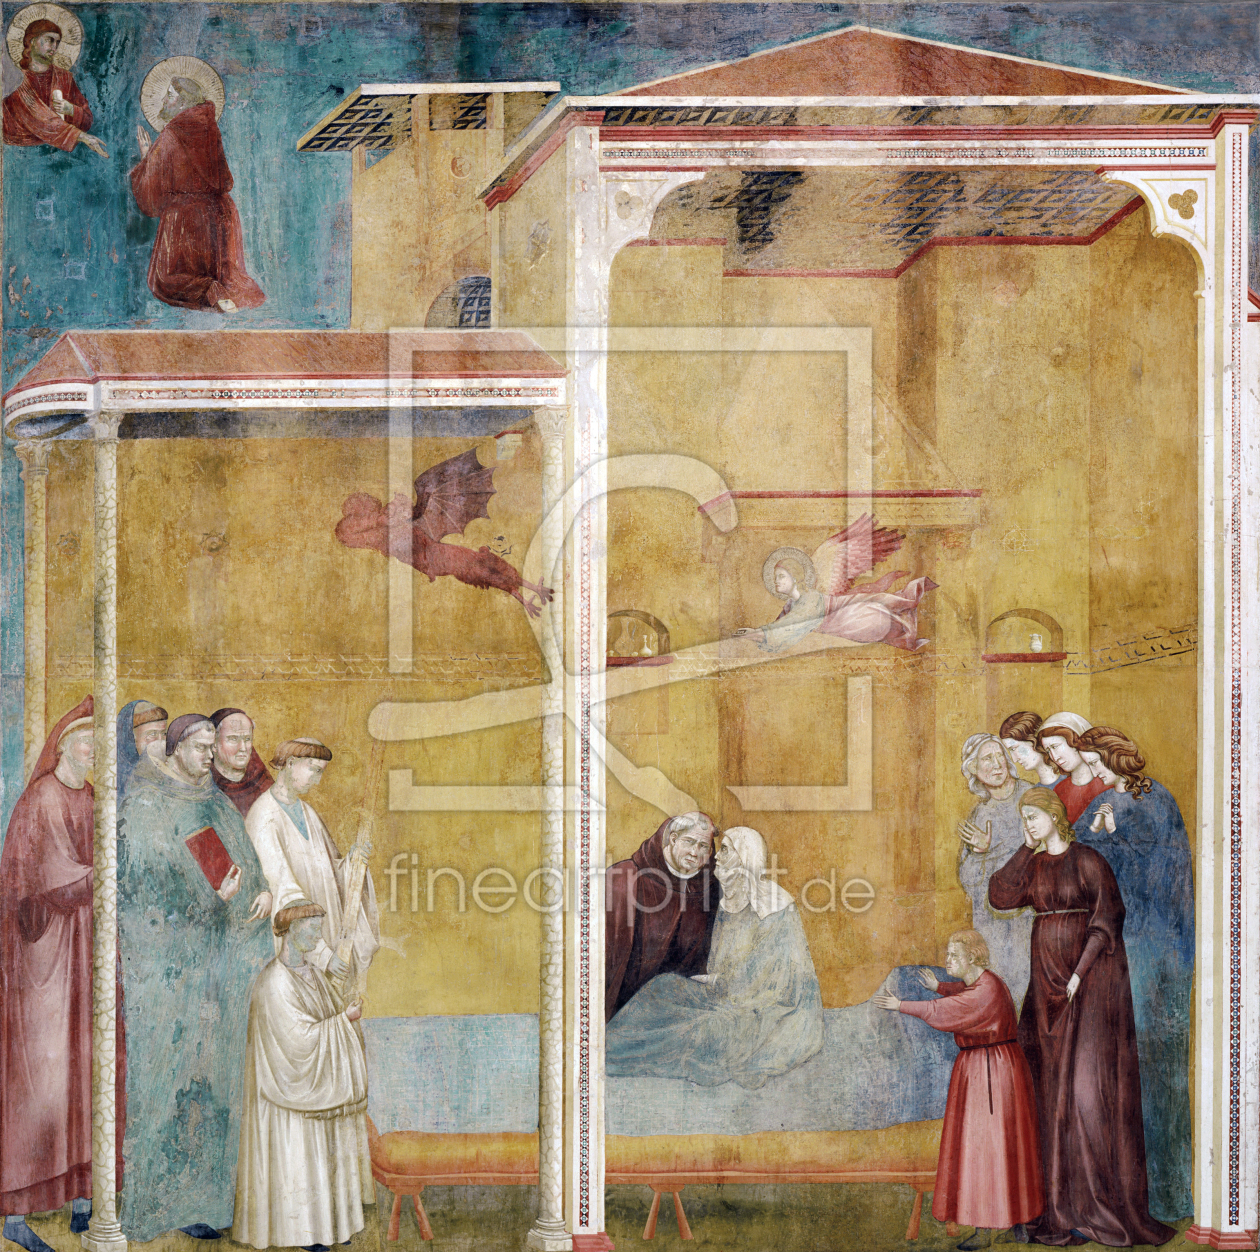 Bild-Nr.: 30001942 Giotto / Confession of the woman erstellt von Giotto di Bondone